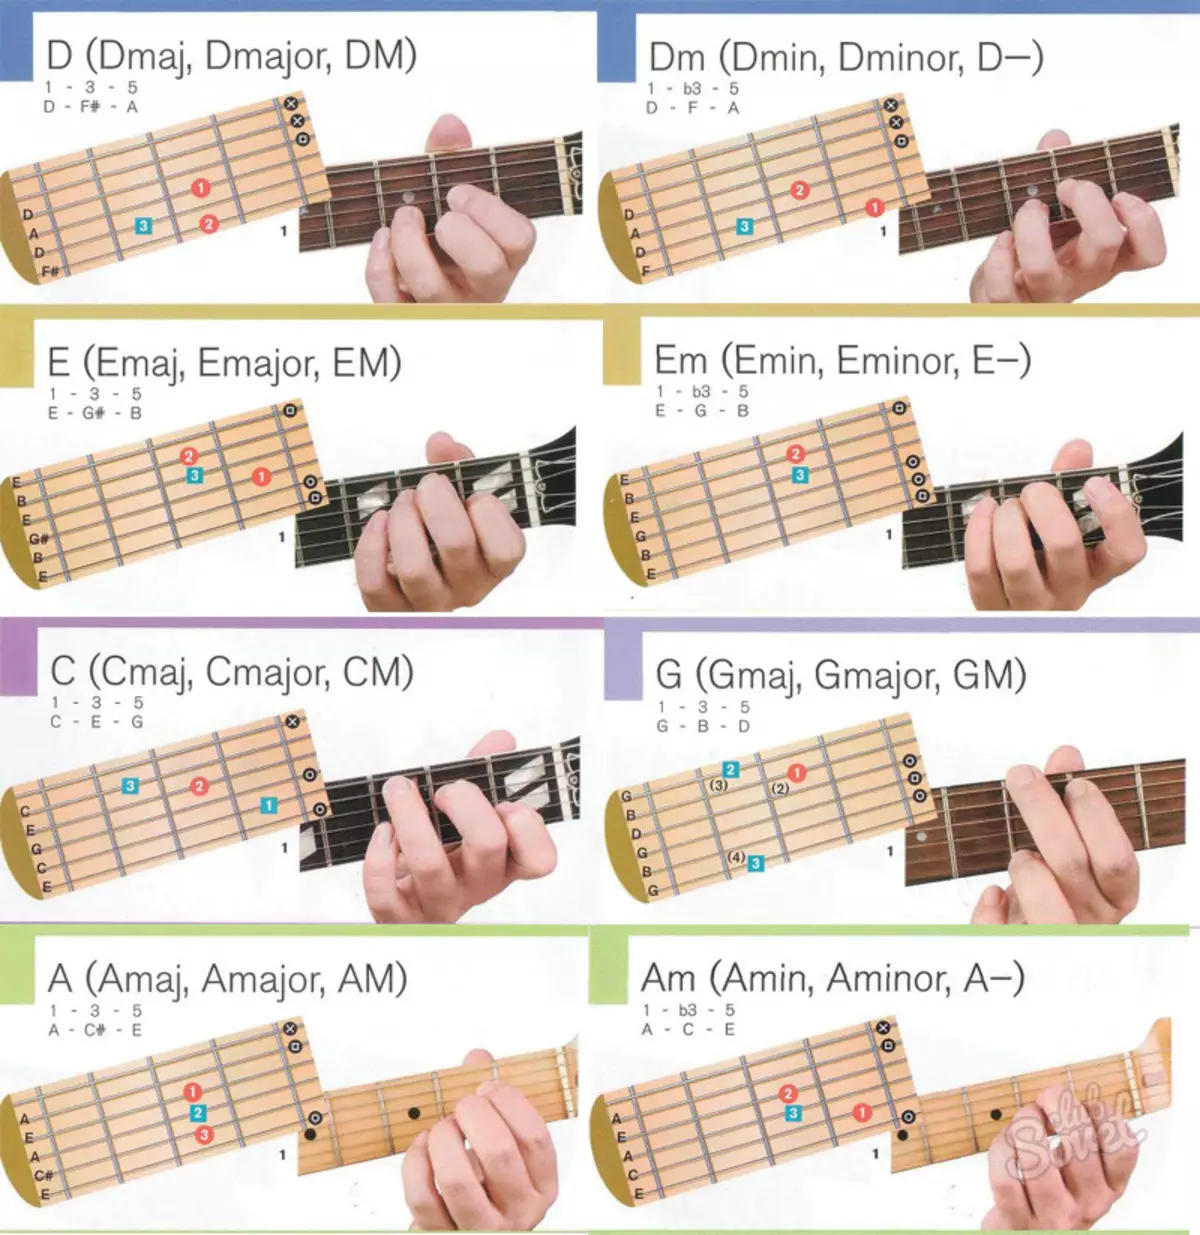 Аппликатура аккордов для гитары 6 струн для начинающих